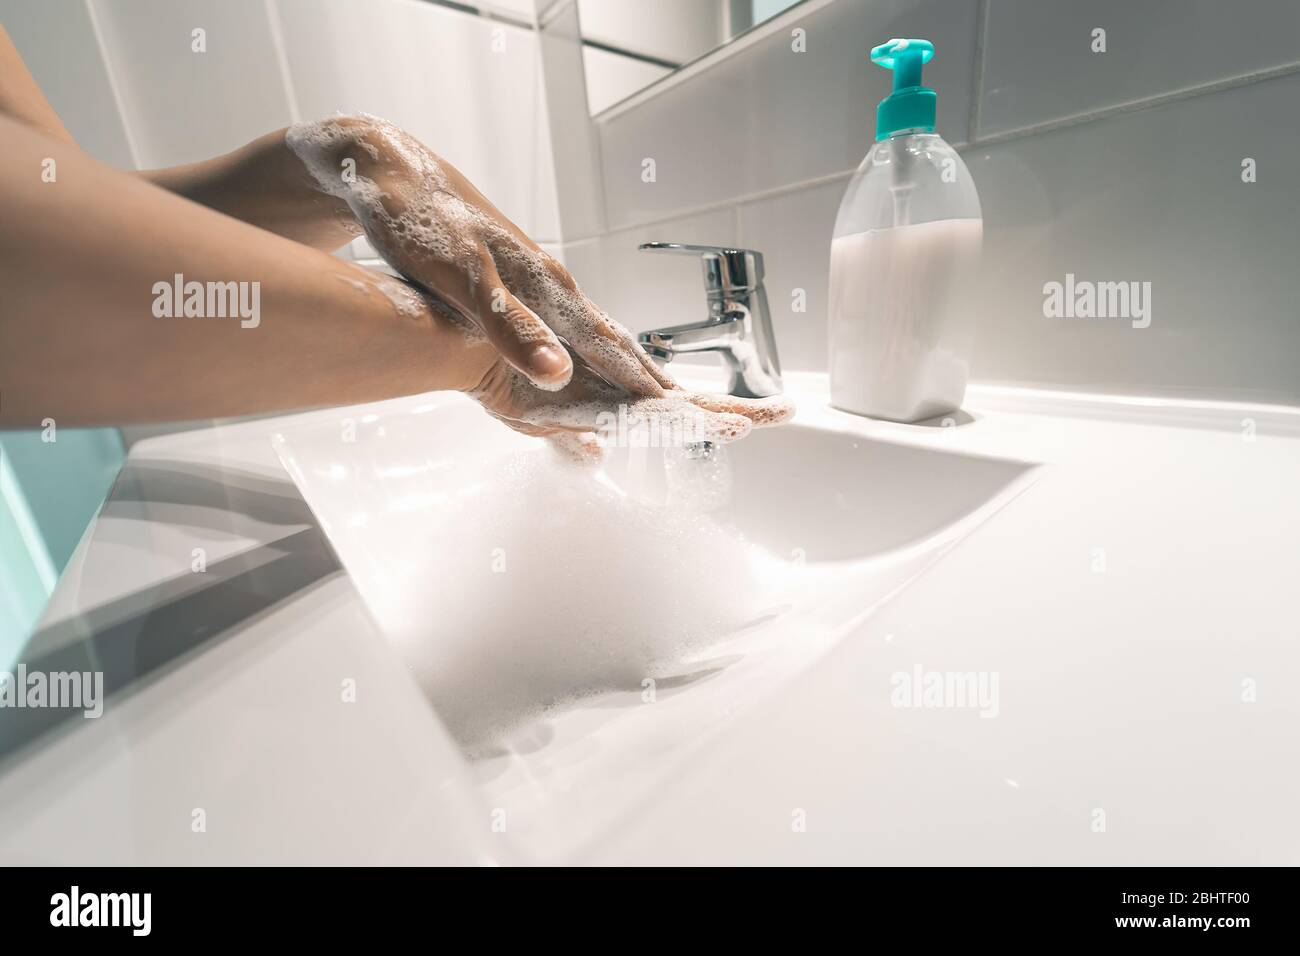 Les femmes se lavent les mains avec du savon liquide pour prévenir et arrêter la propagation du virus corona - concept d'hygiène et de santé Banque D'Images